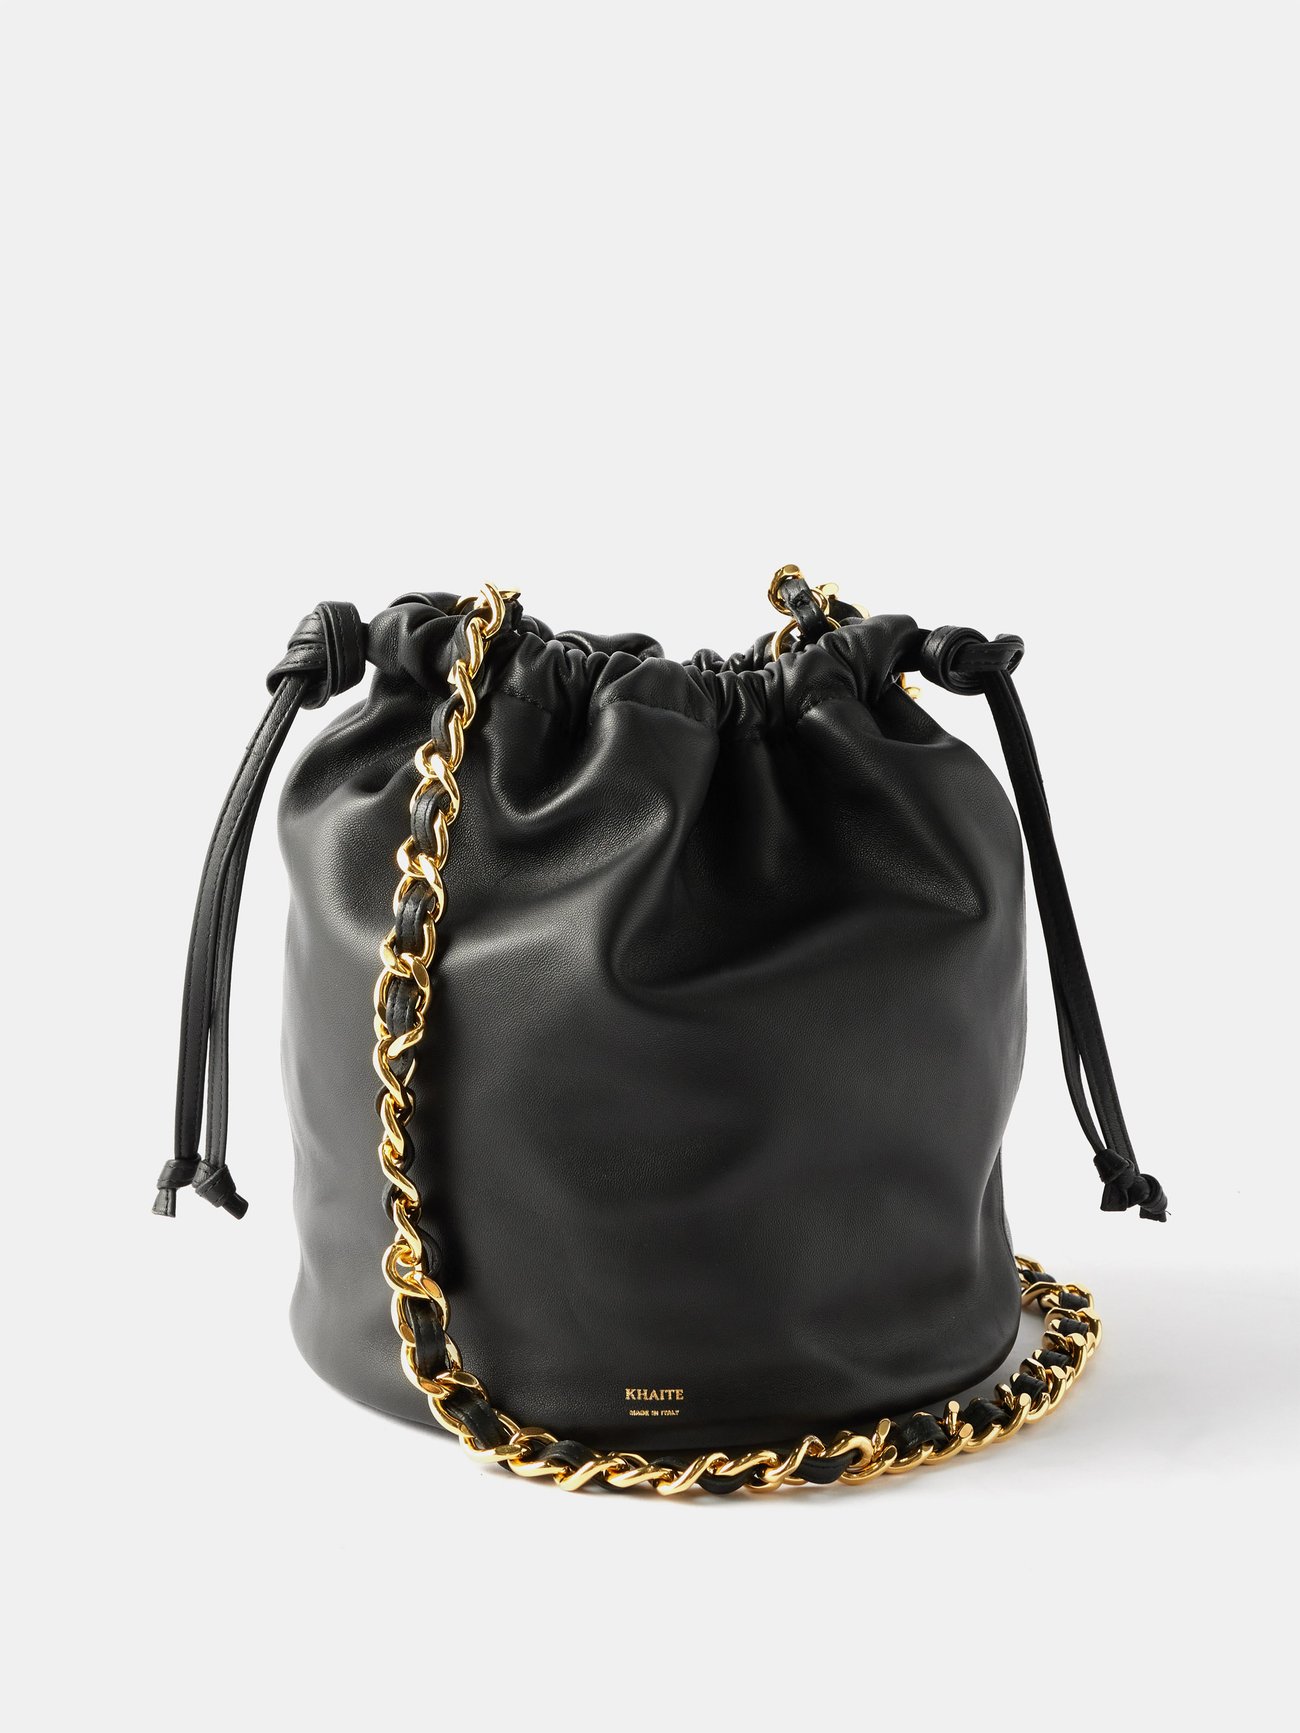 Fashion New Crystal Bucket Bag Designer Women Bag Shoulder Bag